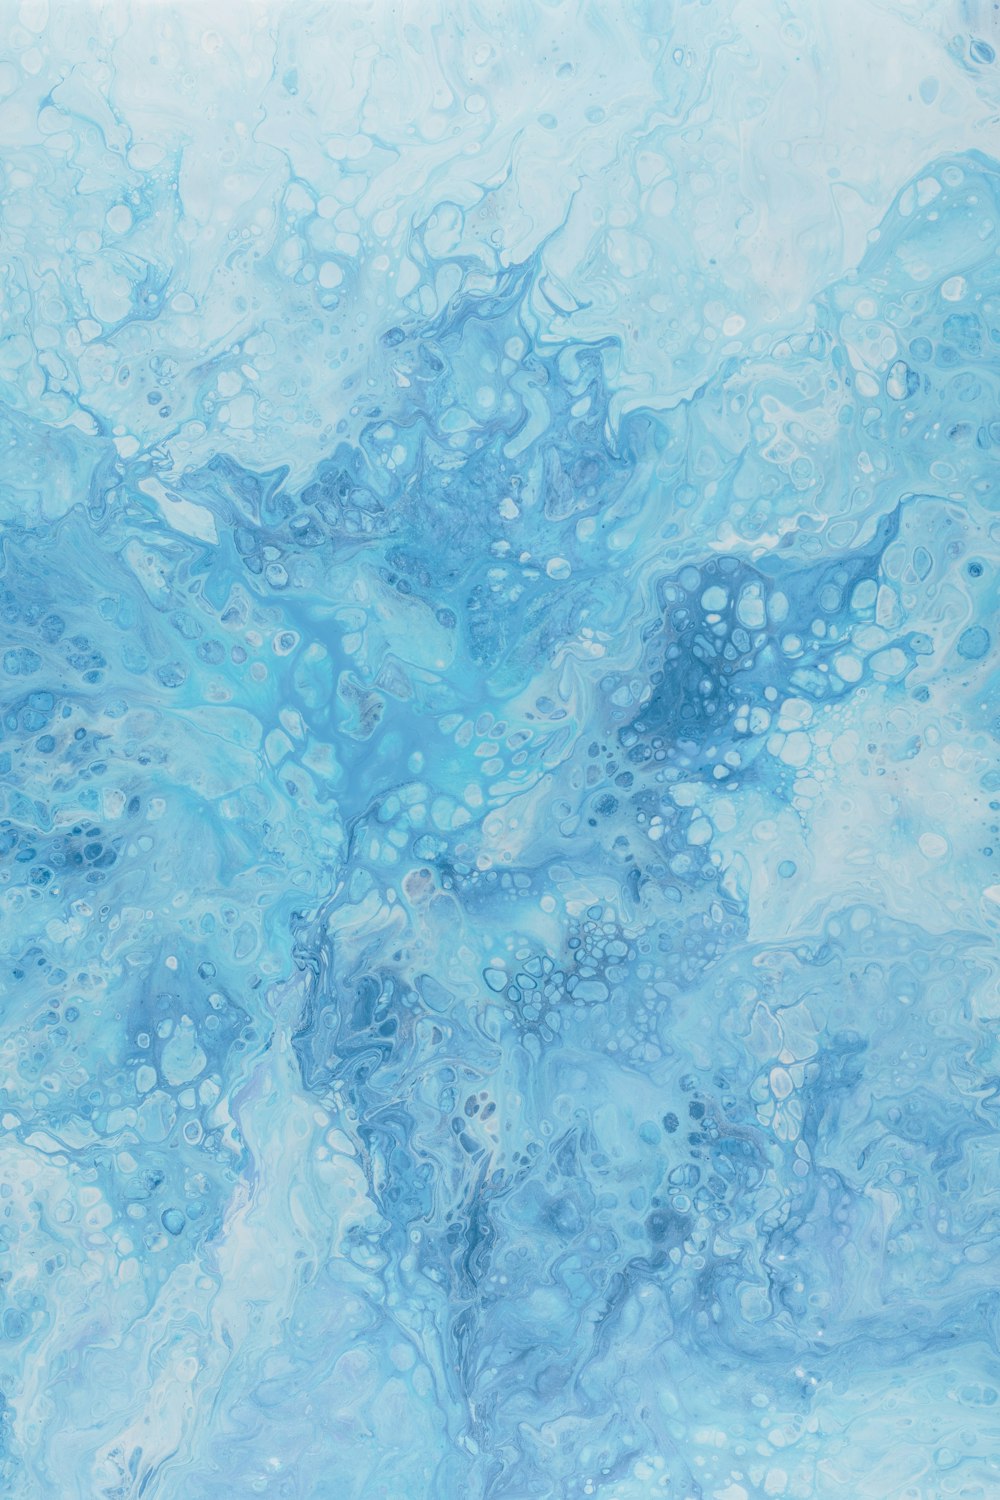 Un dipinto astratto di colori blu e bianco